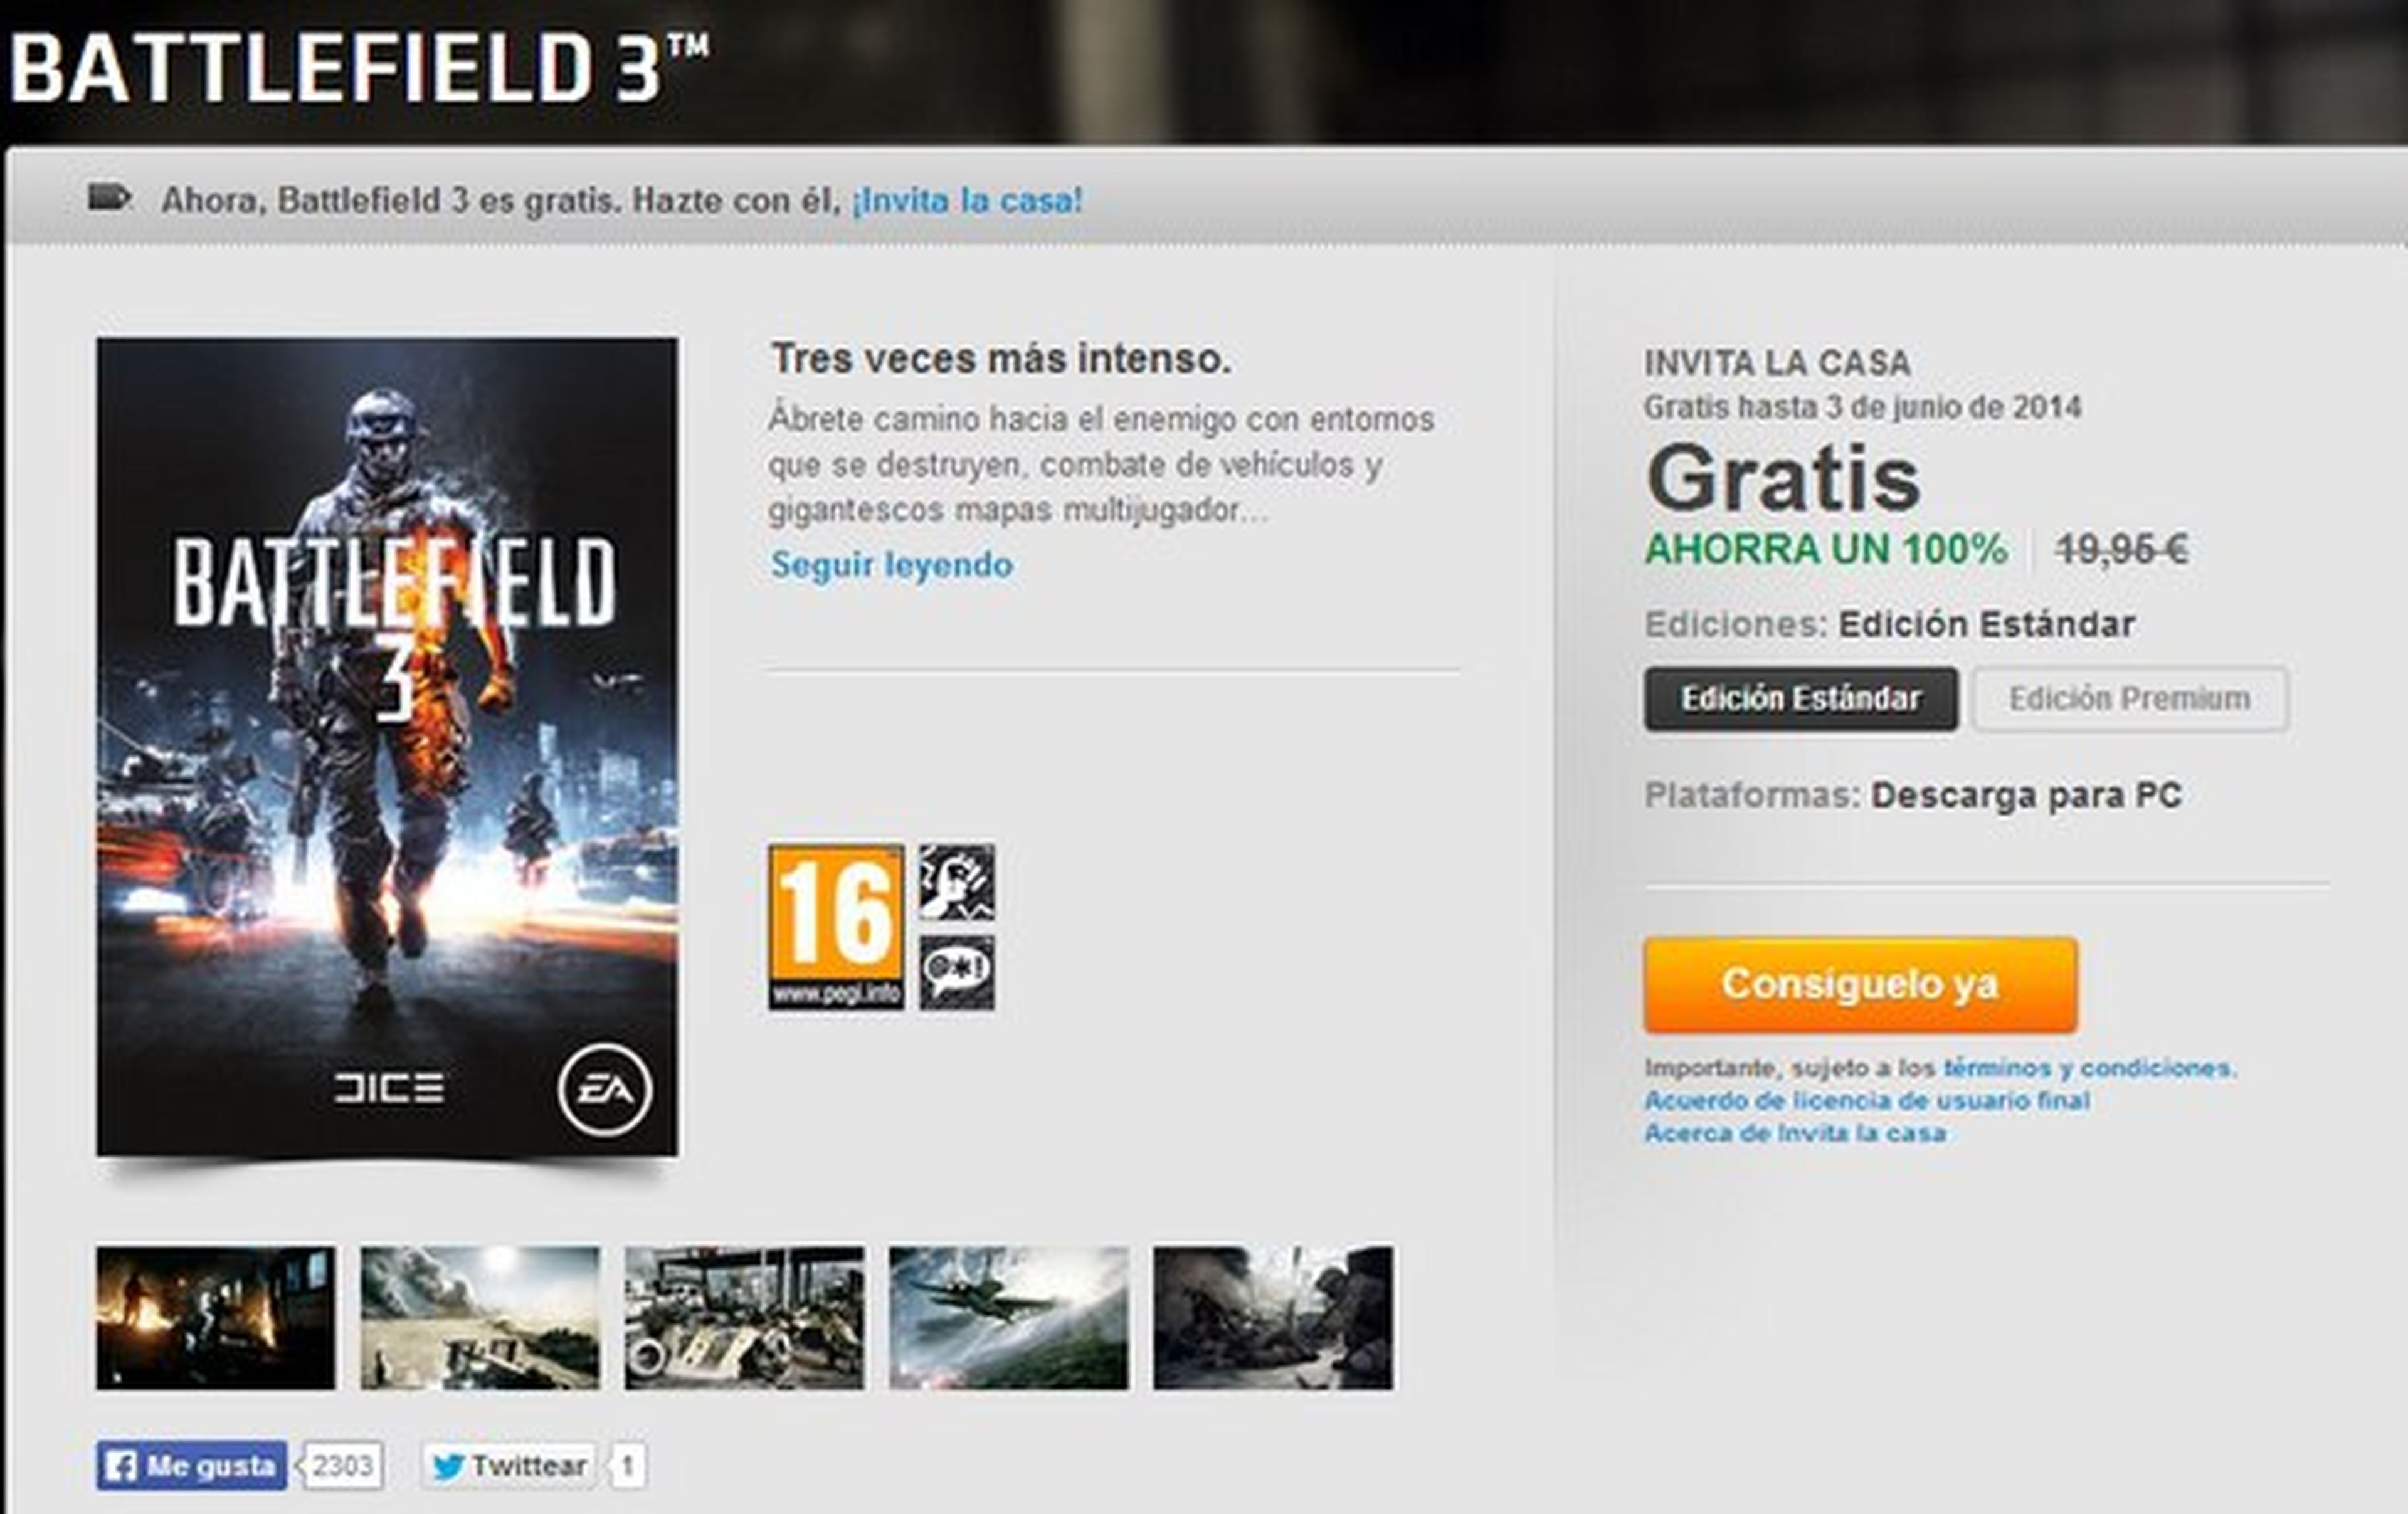 Battlefield 3 gratis